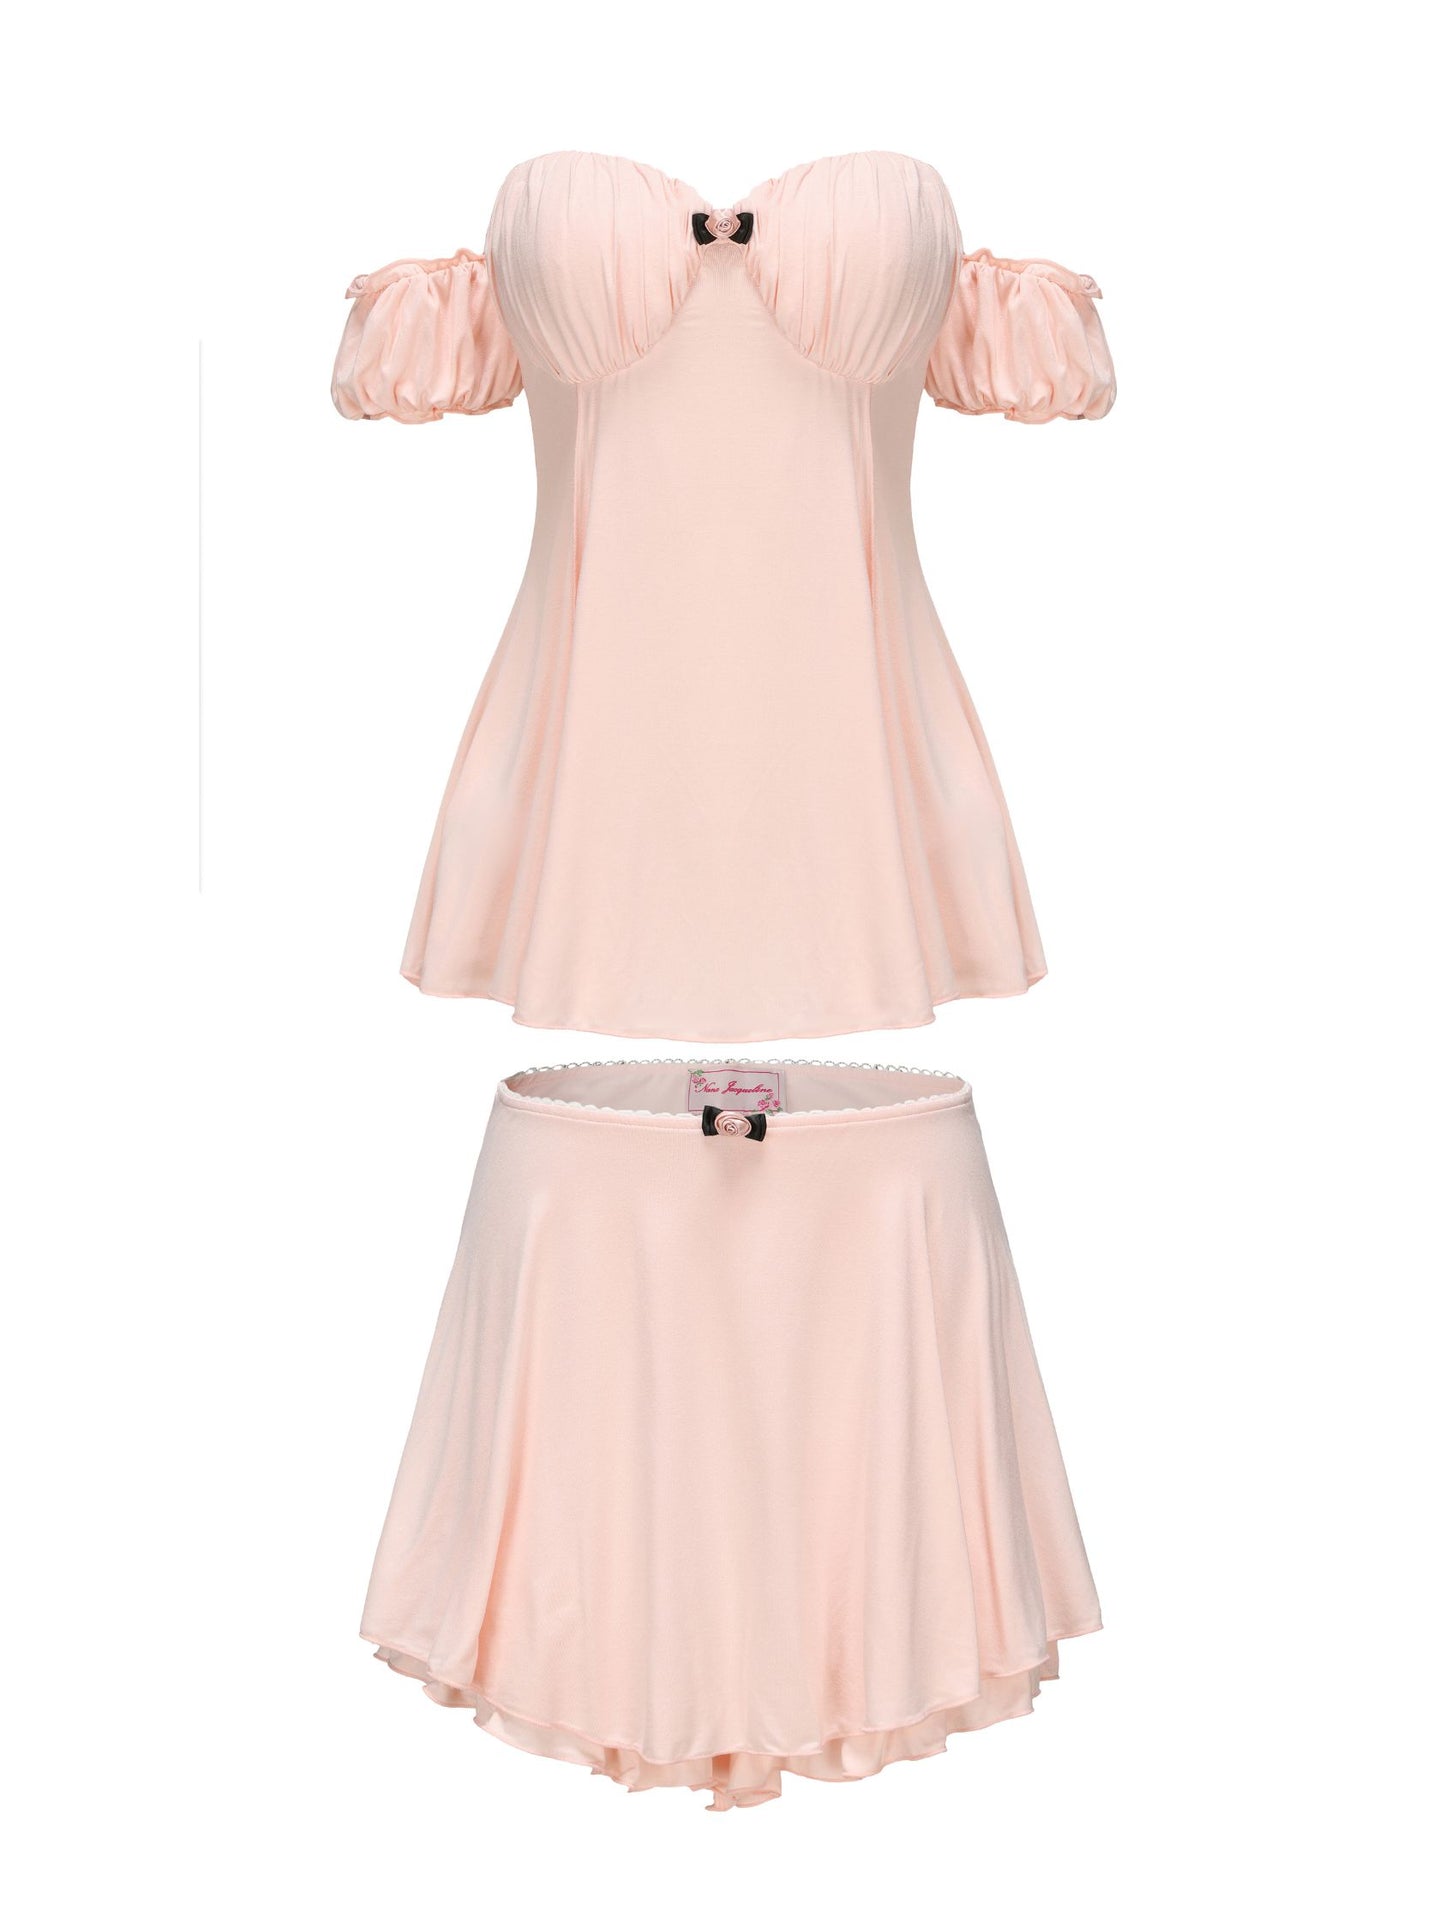 Heidi Top + Skirt (Light Pink) (Final Sale)